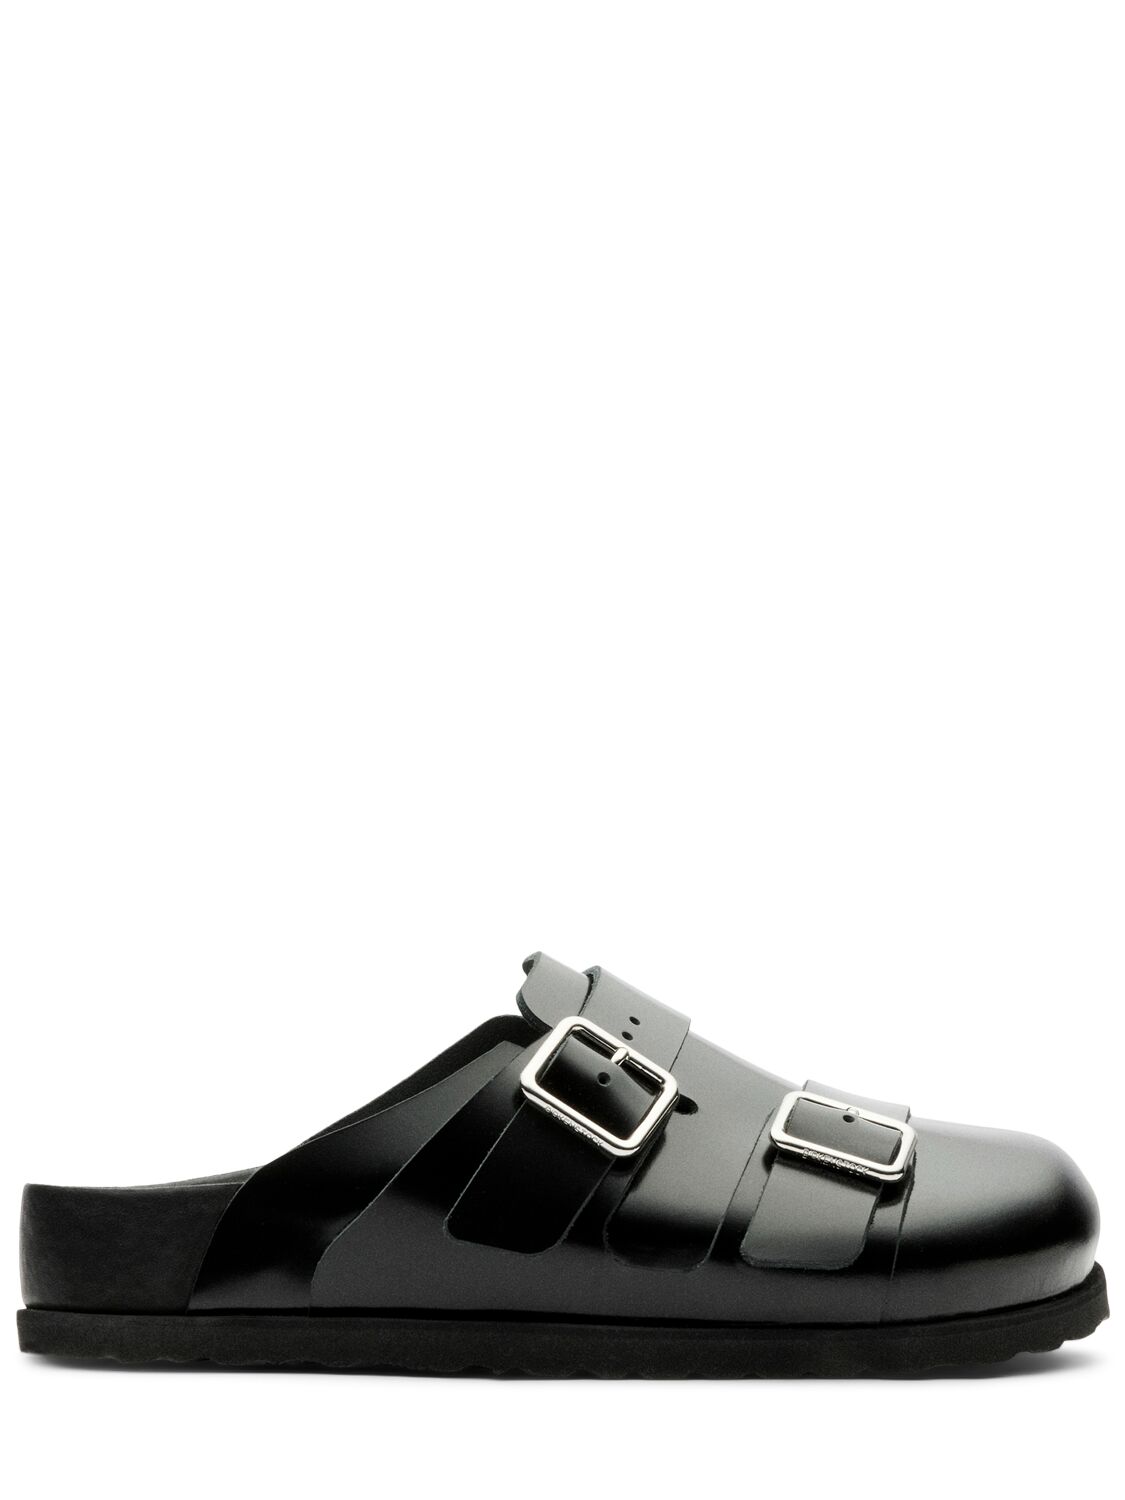 Shop Birkenstock 1774 222 West Shiny Leather Sandals In Black